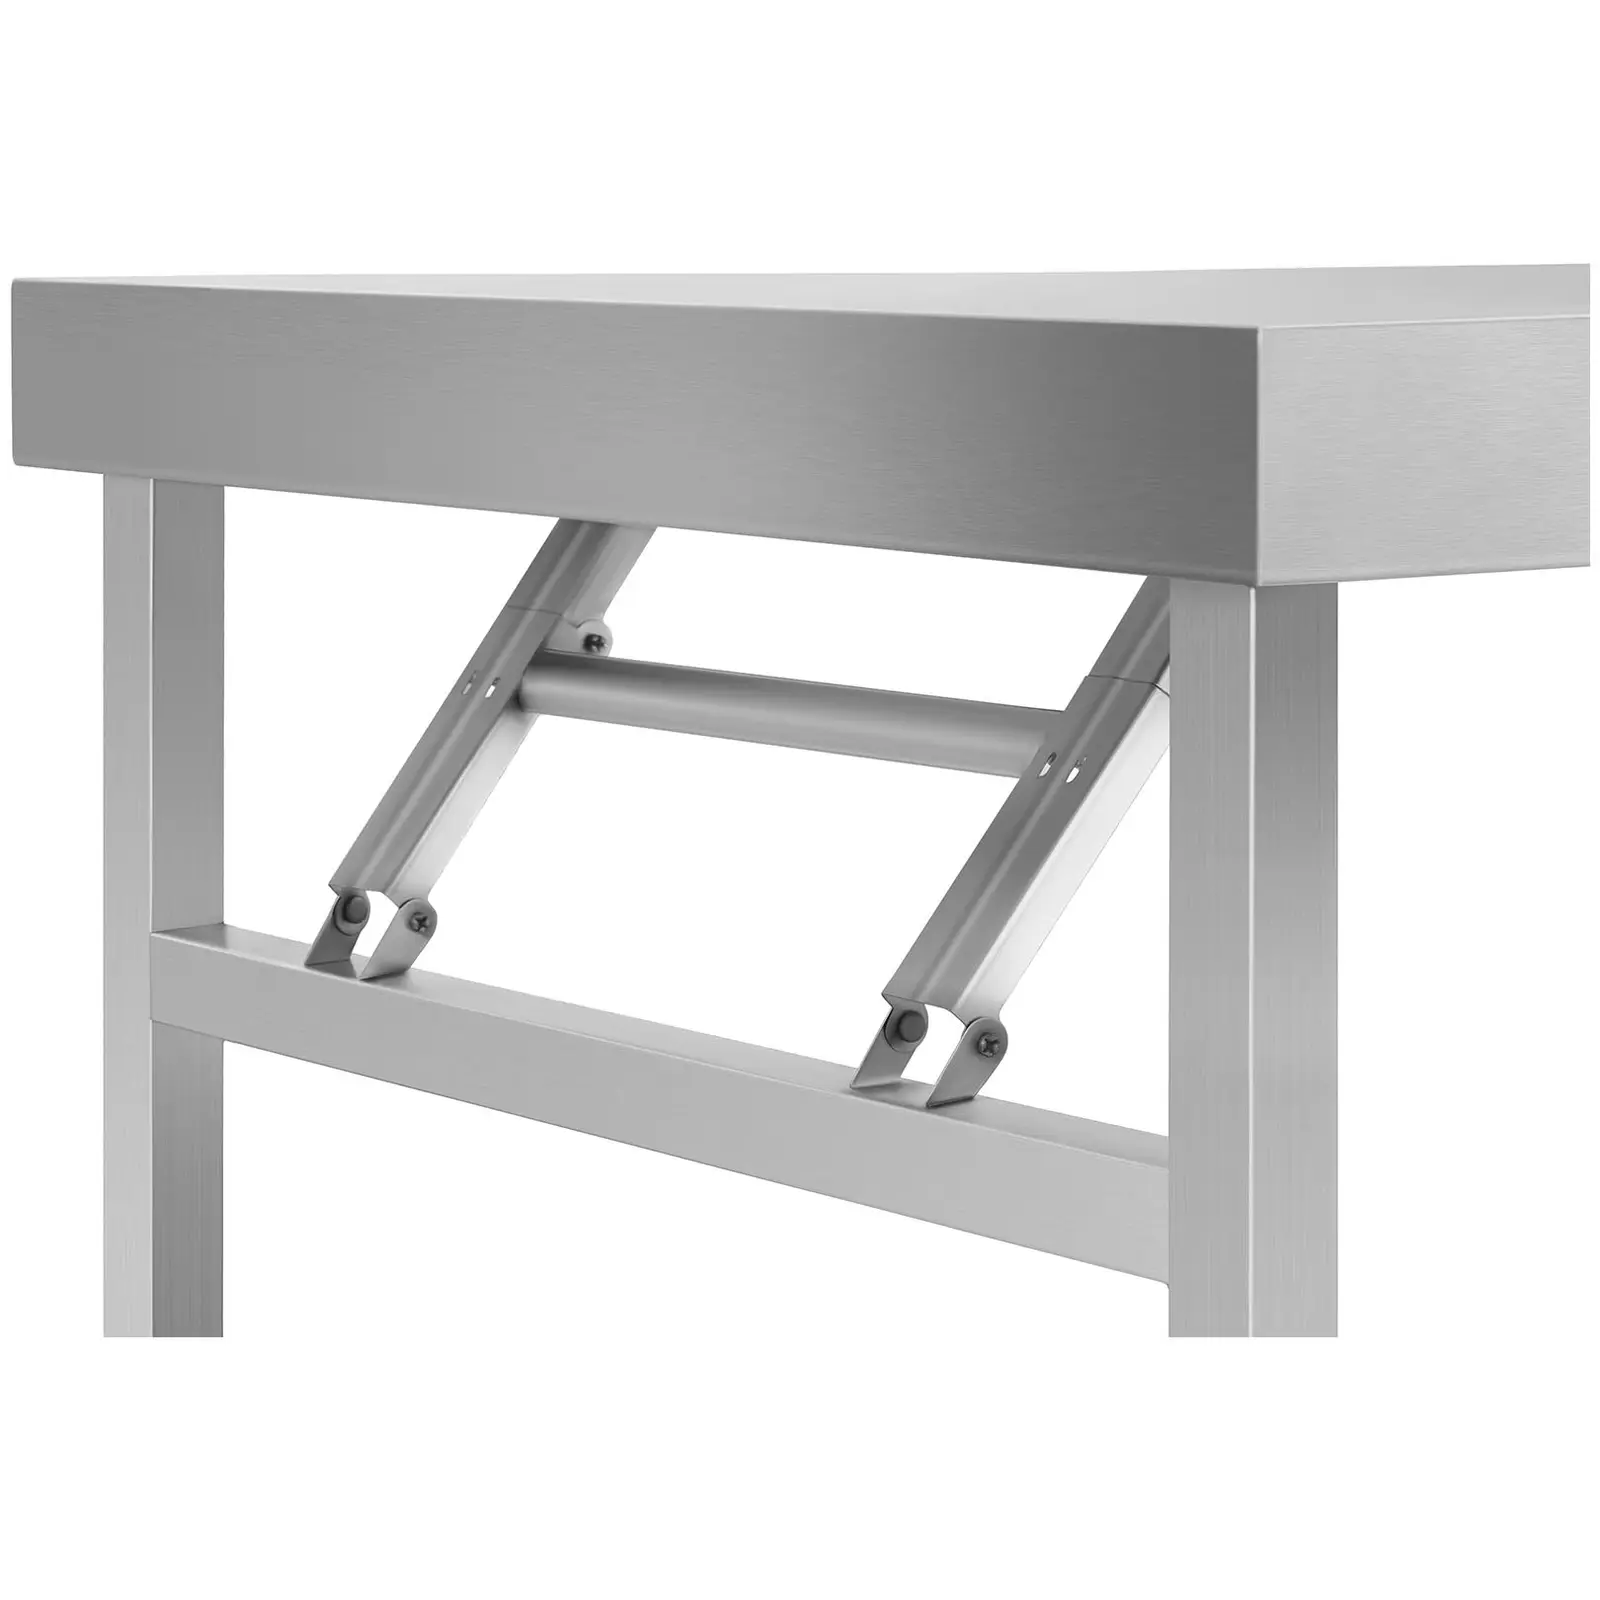 Stålbord - sammenklappeligt - 60 x 180 cm - 230 kg bæreevne